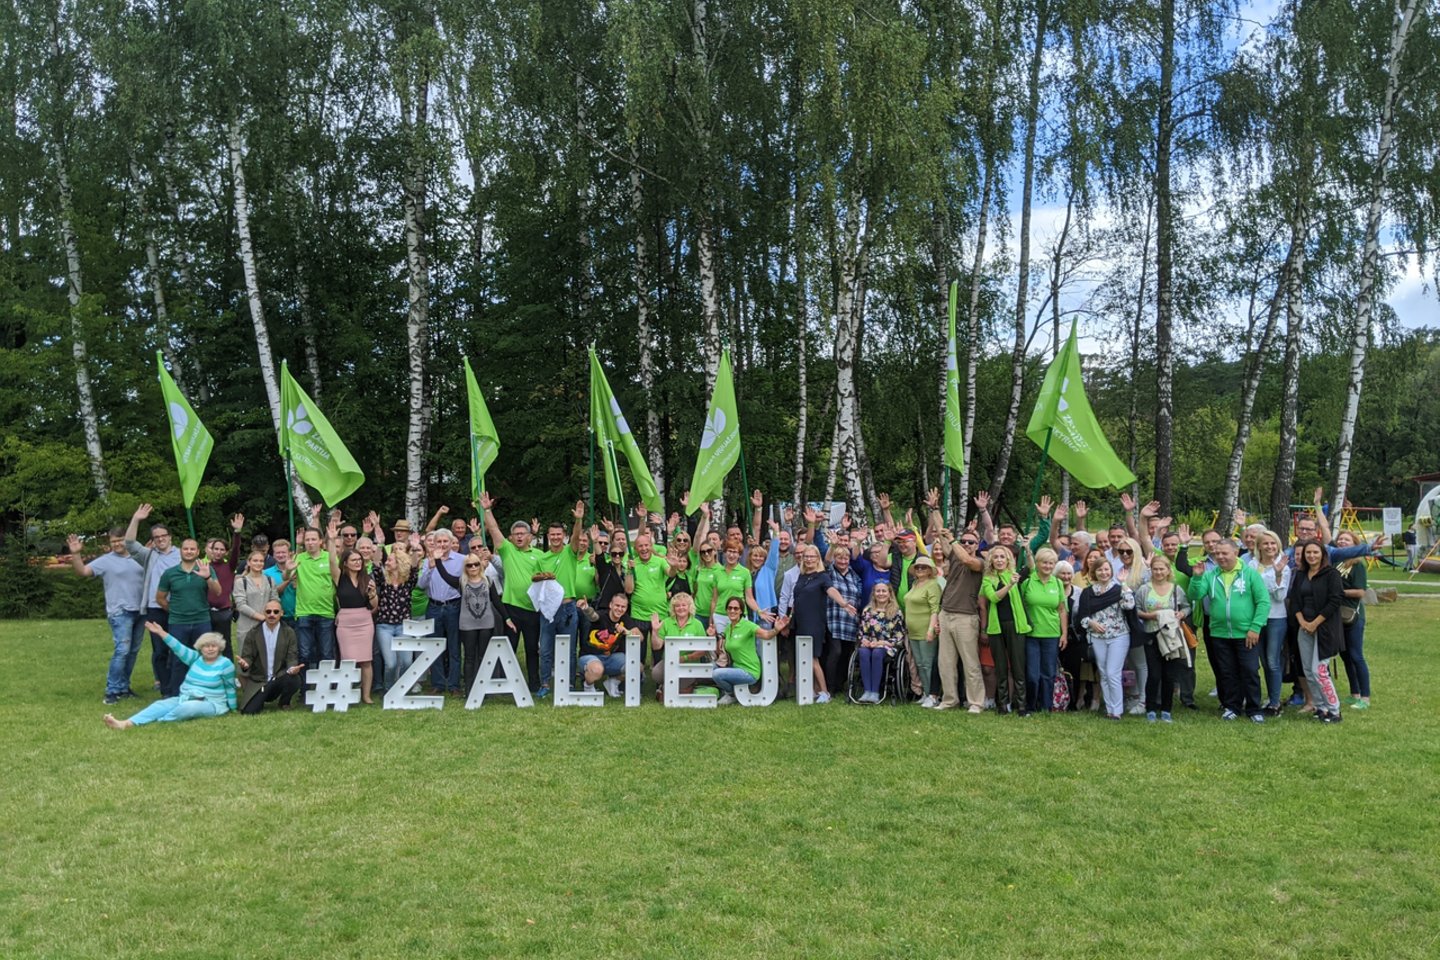  Lietuvos žaliųjų partija patvirtino kandidatų į Seimą sąrašą.<br> Pranešimo spaudai nuotr.